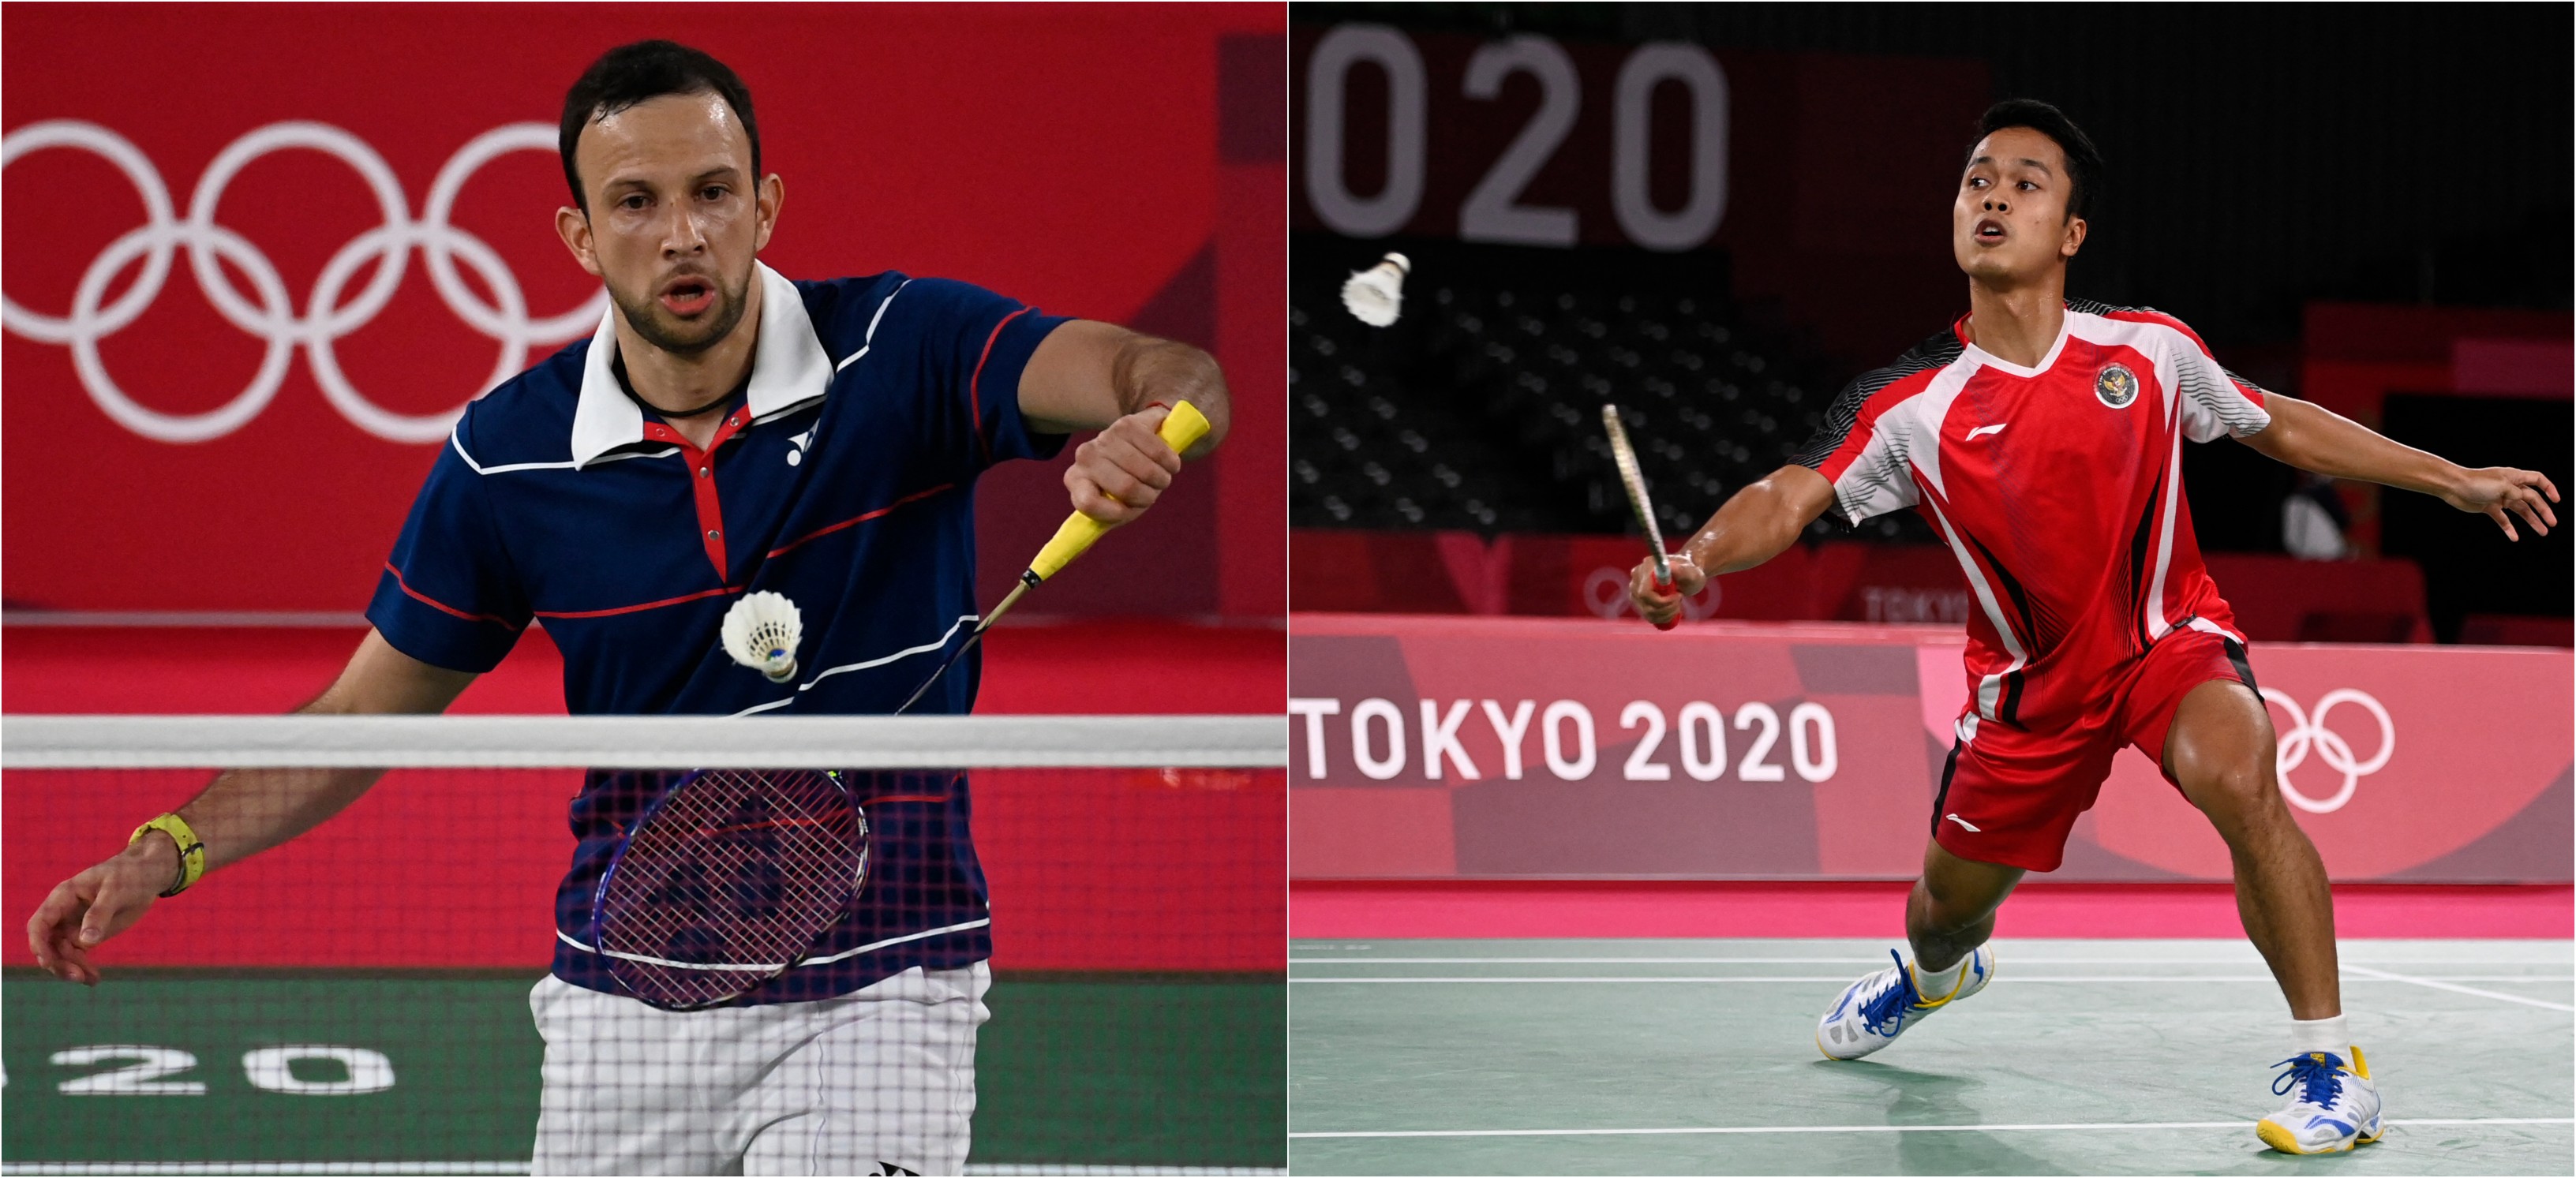 Kevin Cordón y Anthony Sinisuka Ginting disputarán la medalla de bronce del bádminton individual masculino de los Juegos Olímpicos de Tokio 2020. Fotos Prensa Libre: AFP.